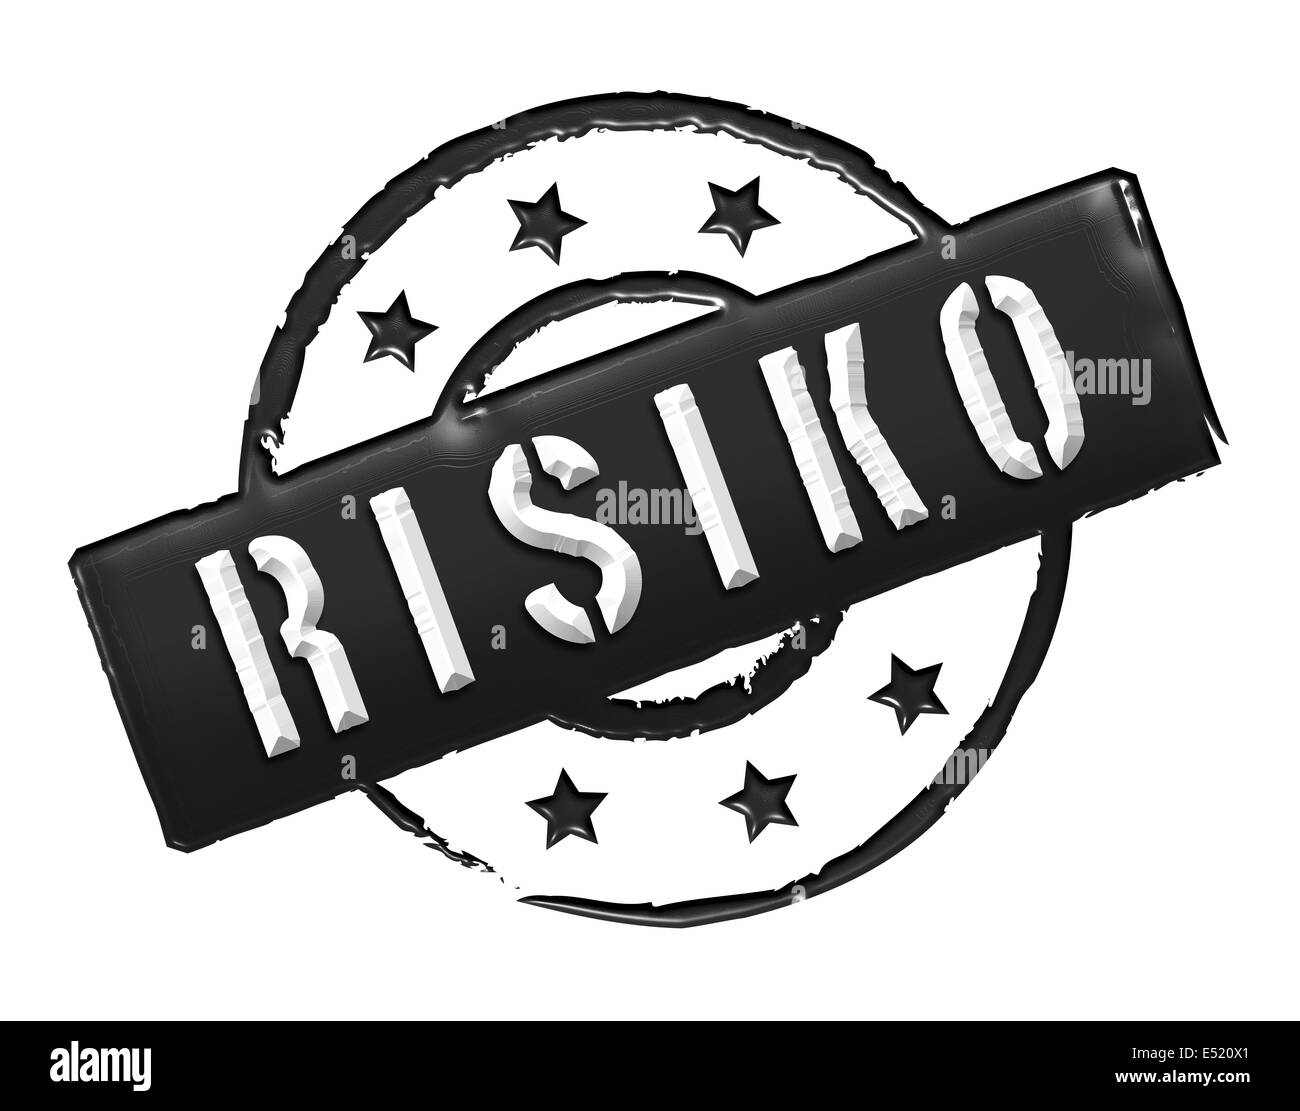 Stamp - RISIKO Stock Photo